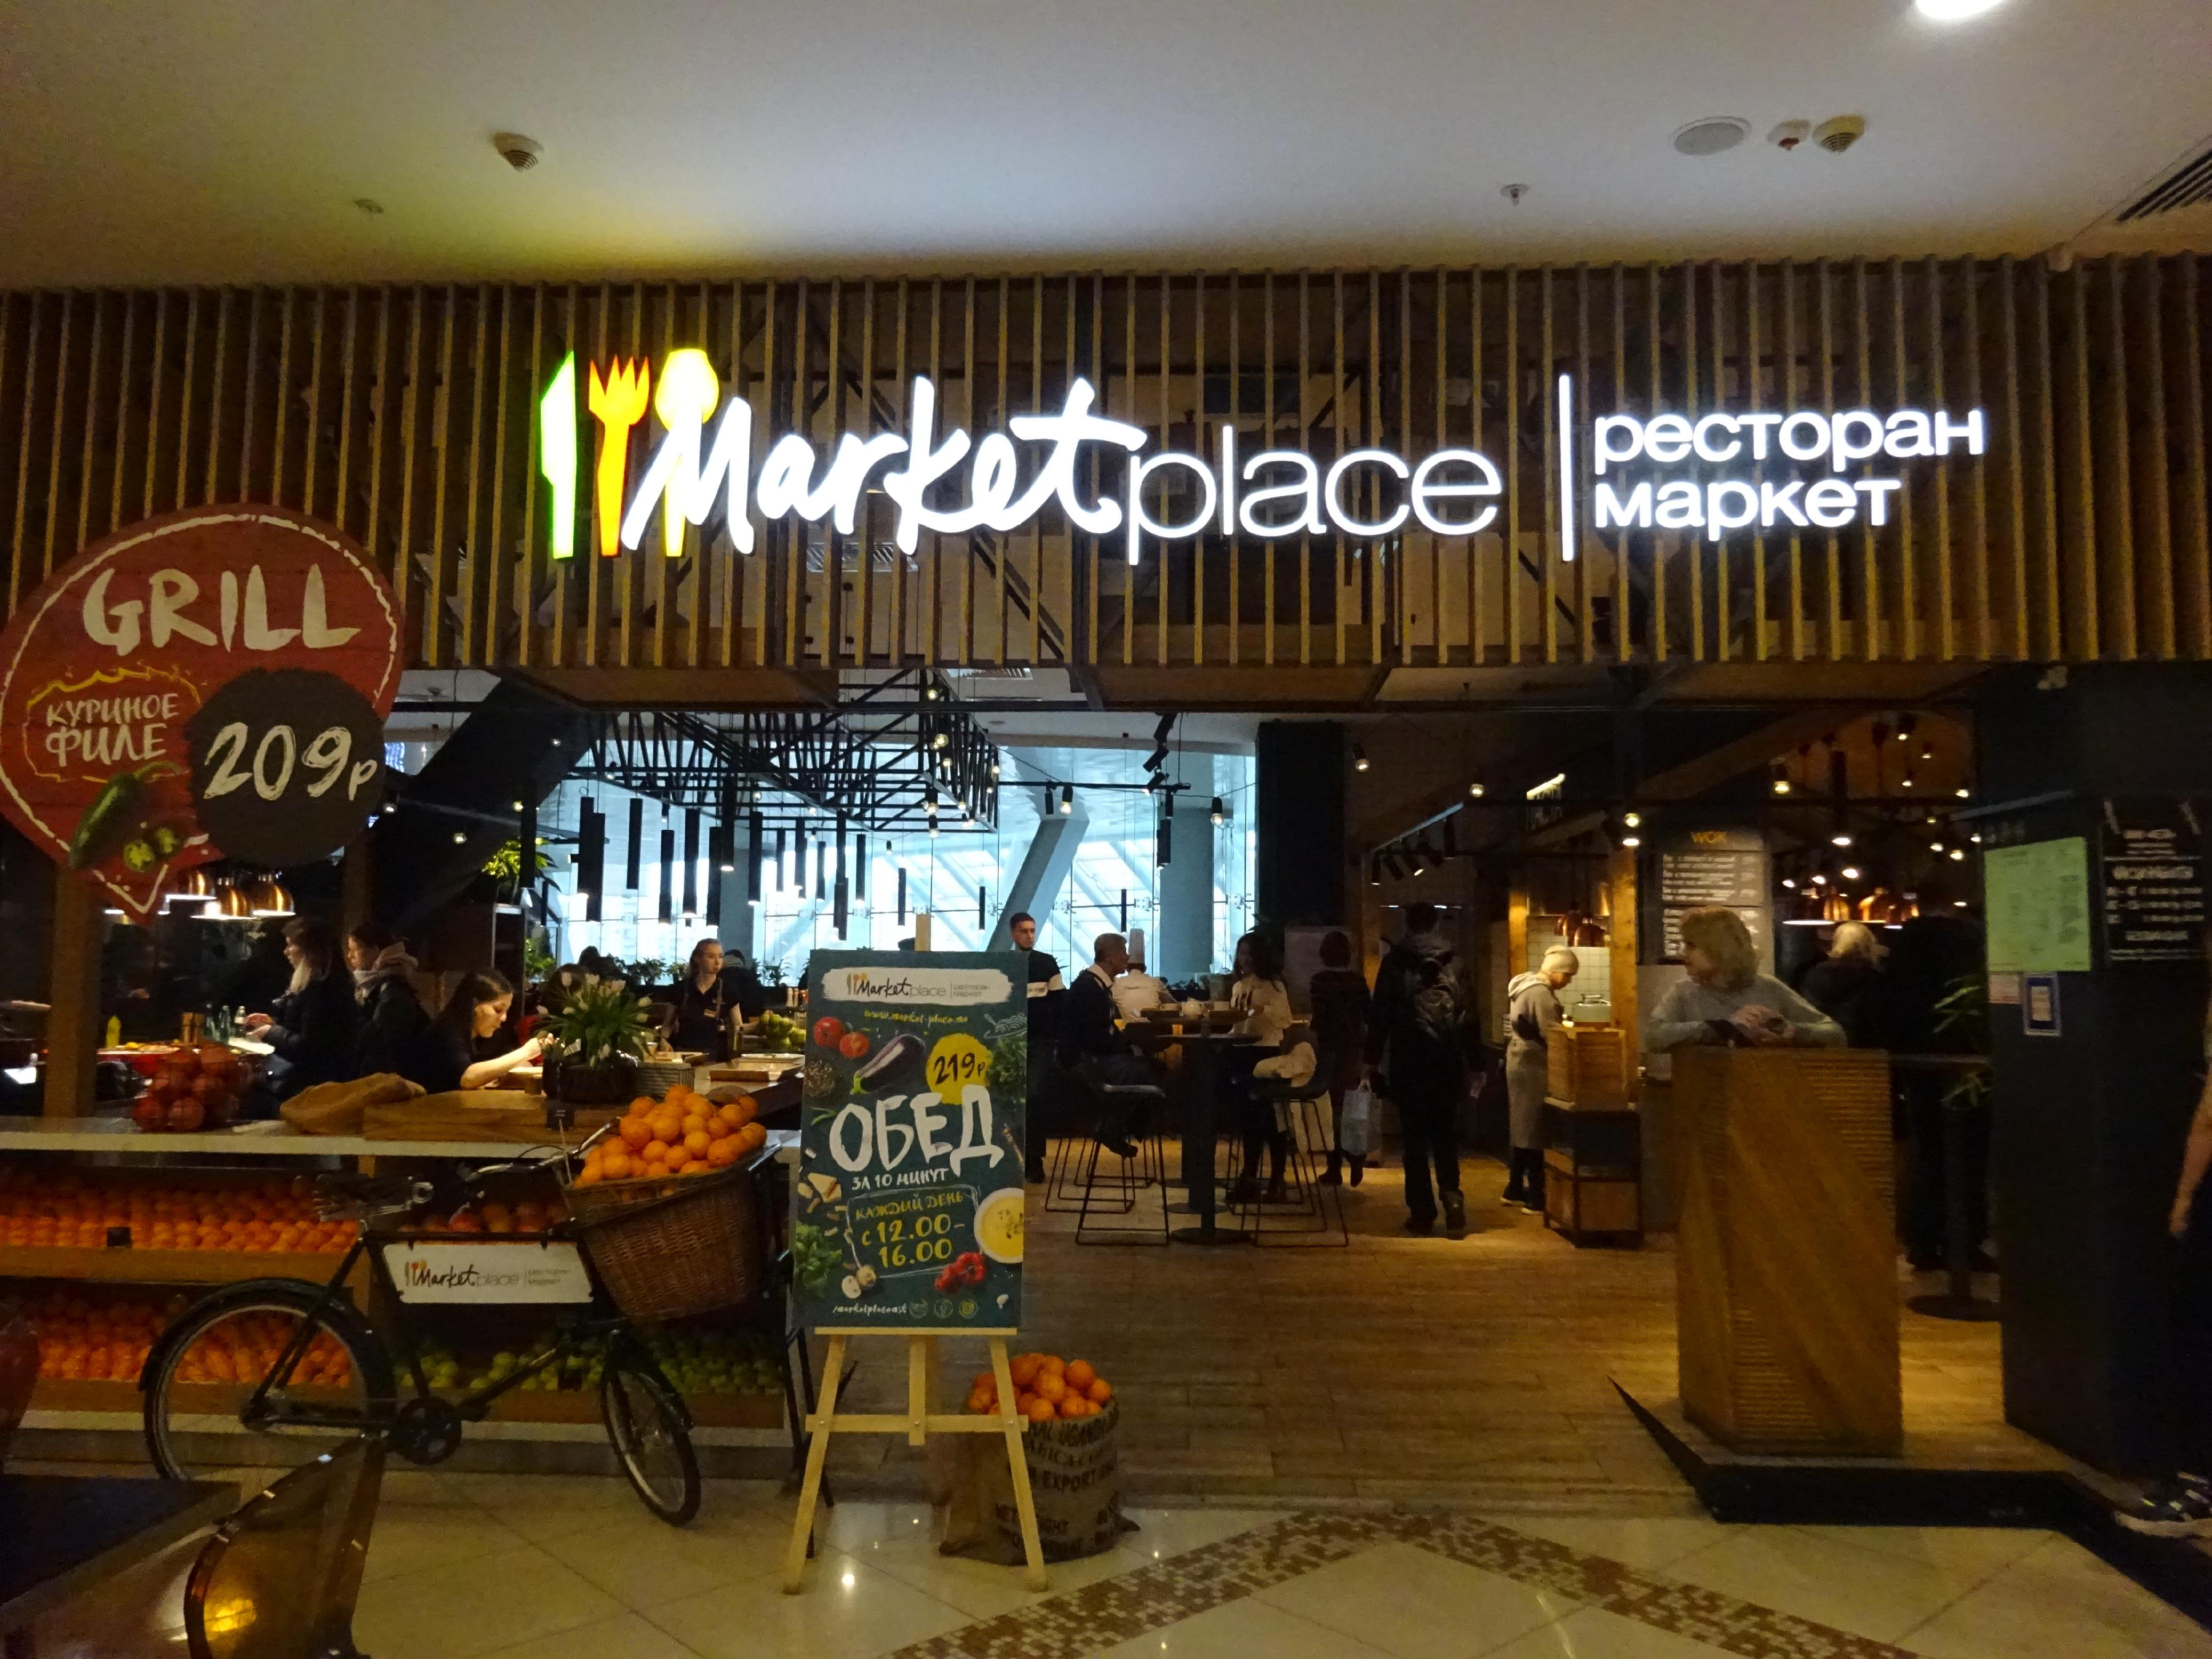 Marketplace, ресторан-маркет, площадь Киевского вокзала, 2, 4 этаж